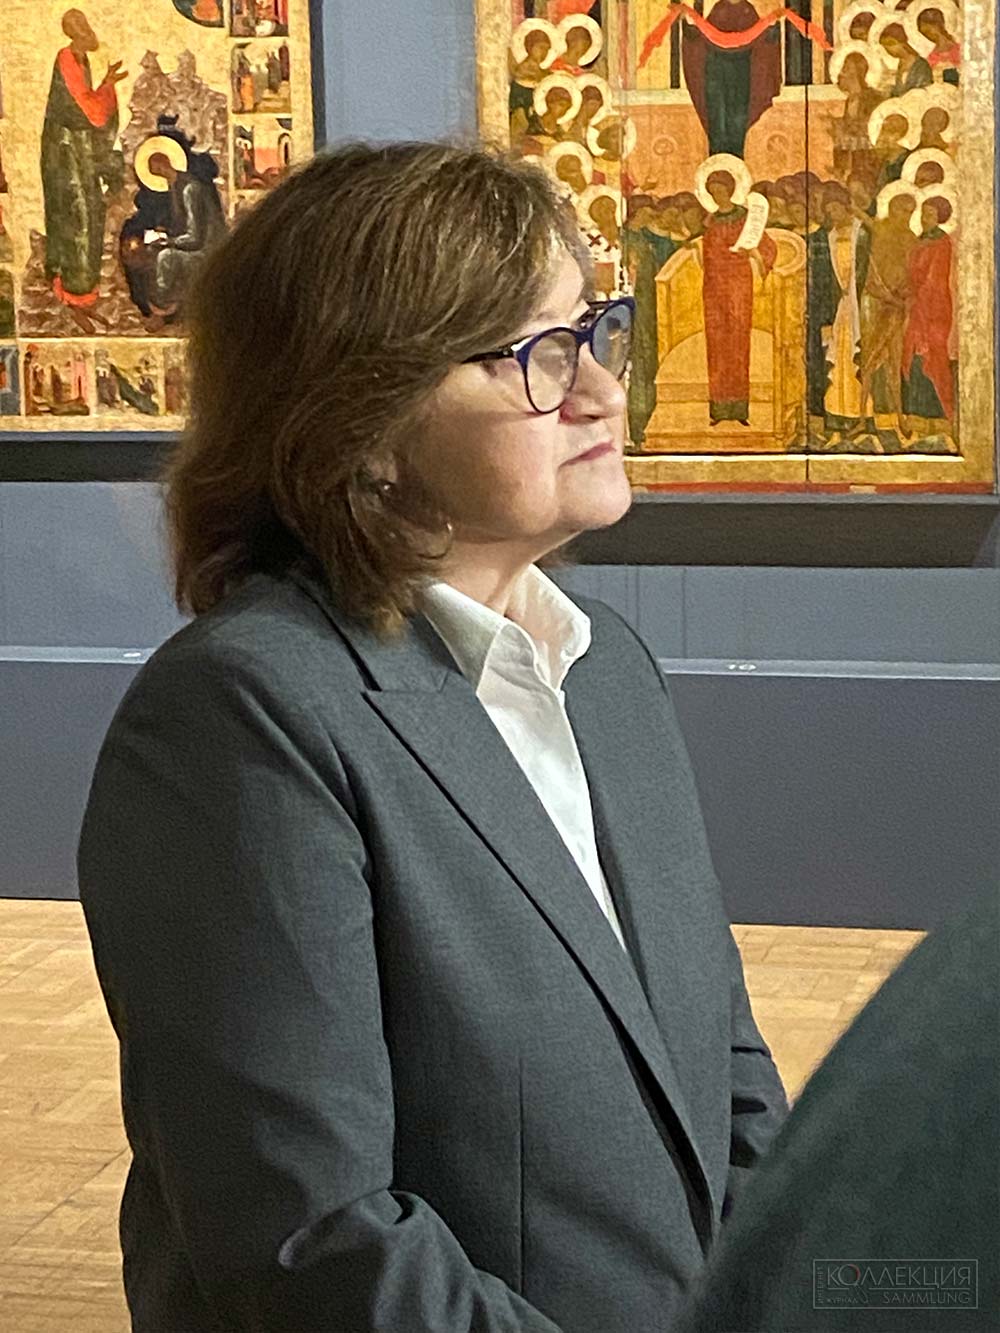 Зельфира Исмаиловна Трегулова, директор Государственной Третьяковской галереи